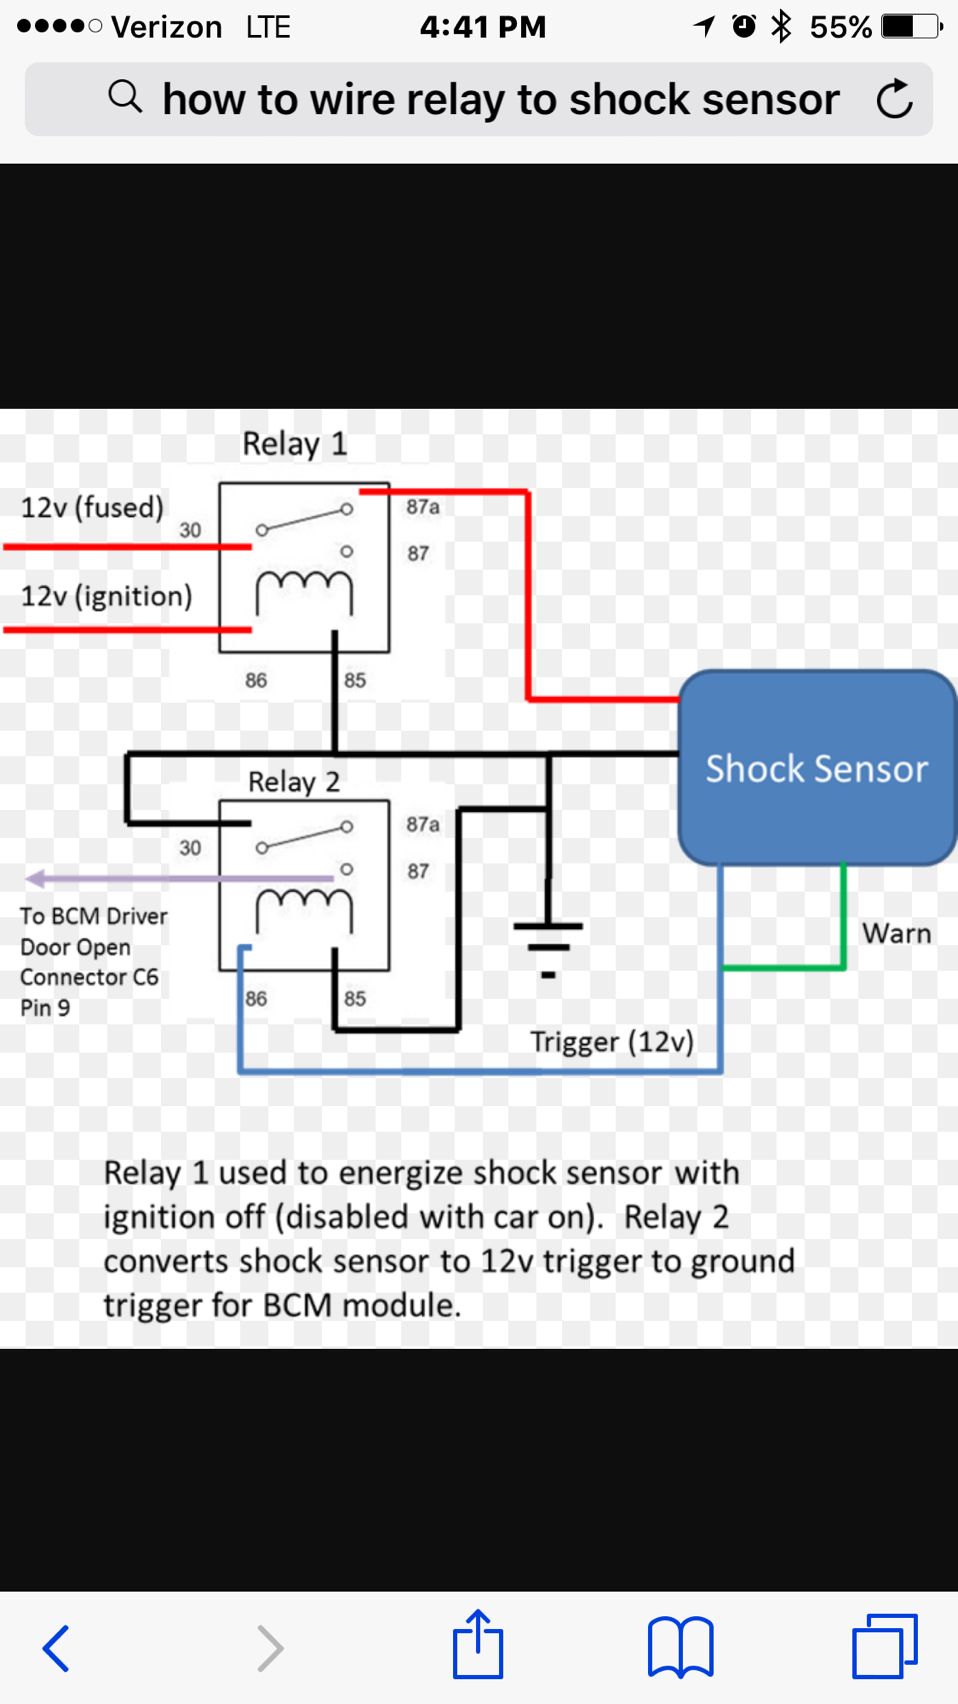 ¿Puede agregar un sensor de choque a la alarma de fábrica?